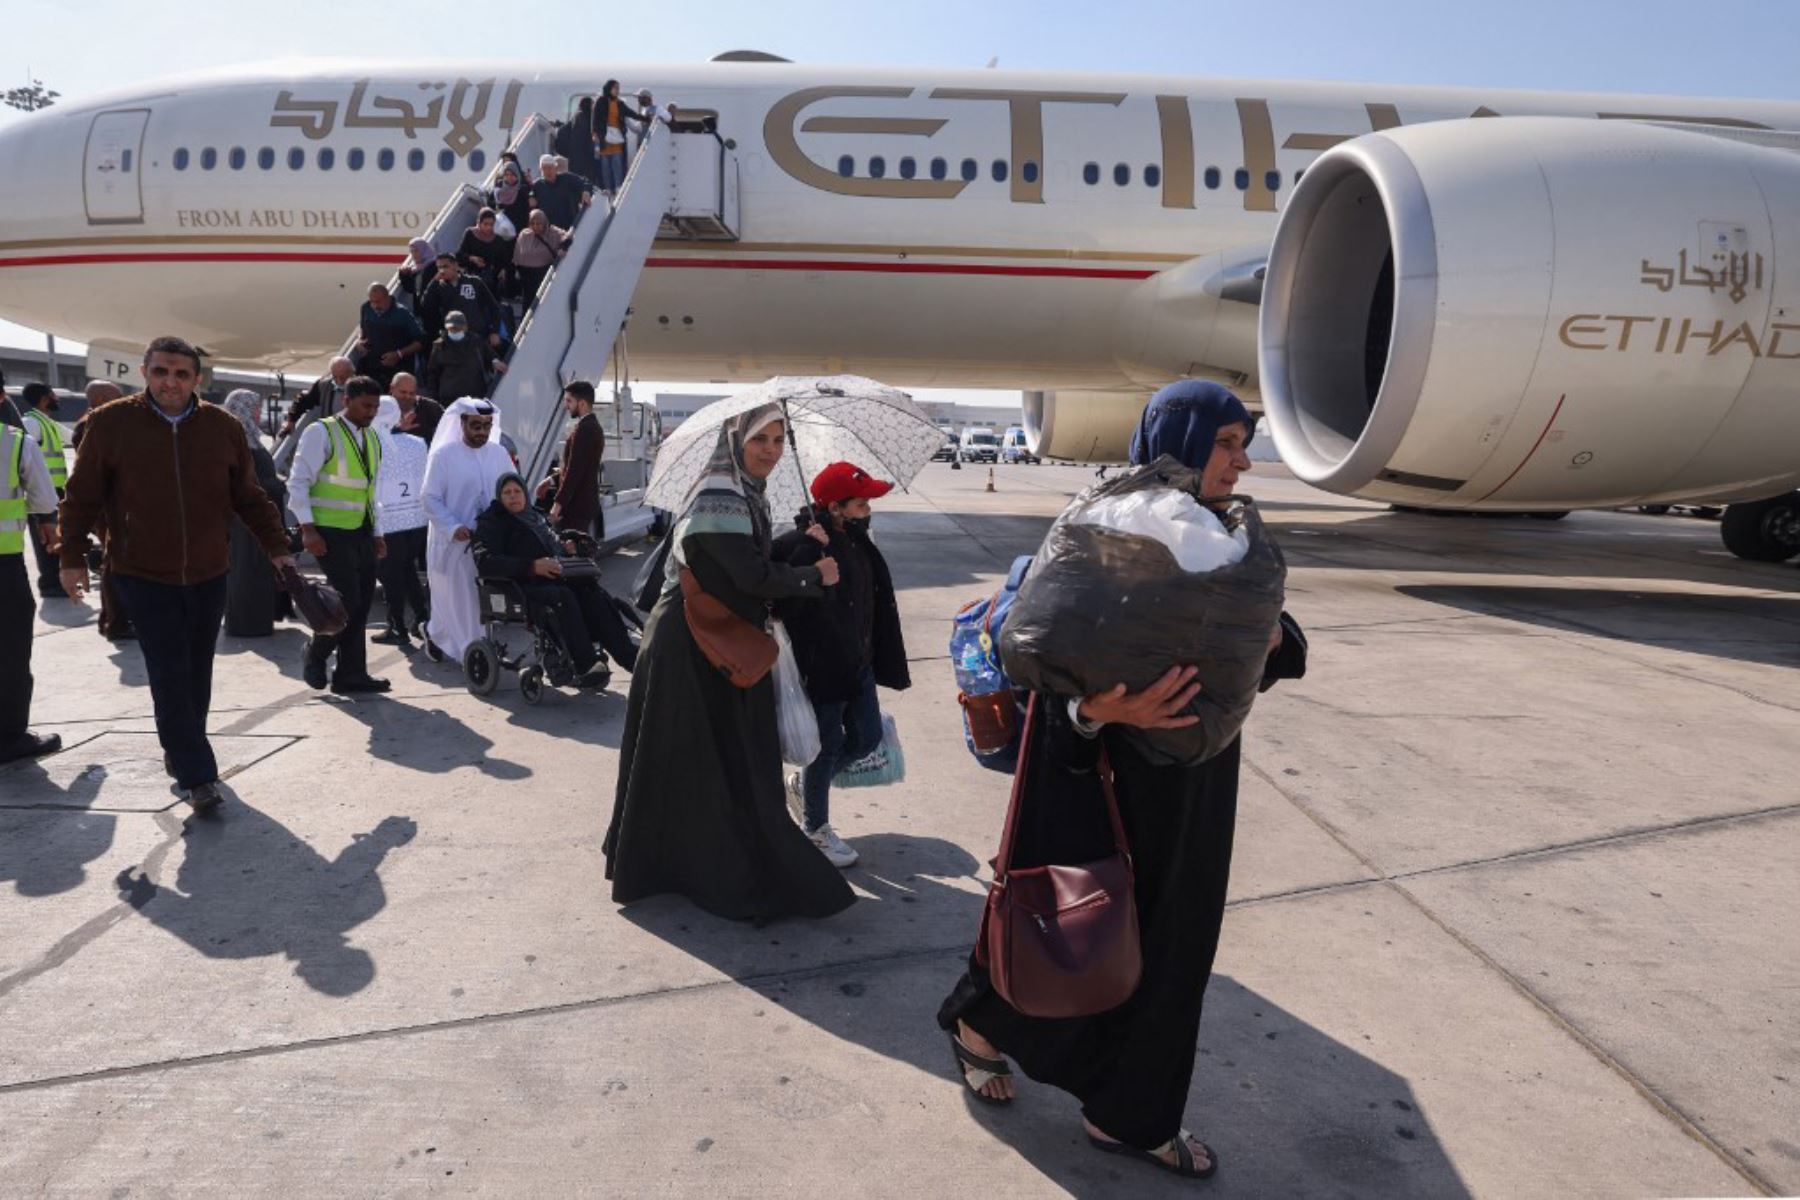 Los palestinos evacuados de la Franja de Gaza que llegaron en un avión desde el aeropuerto egipcio de El-Arish desembarcan al aterrizar en Abu Dhabi. Foto: AFP